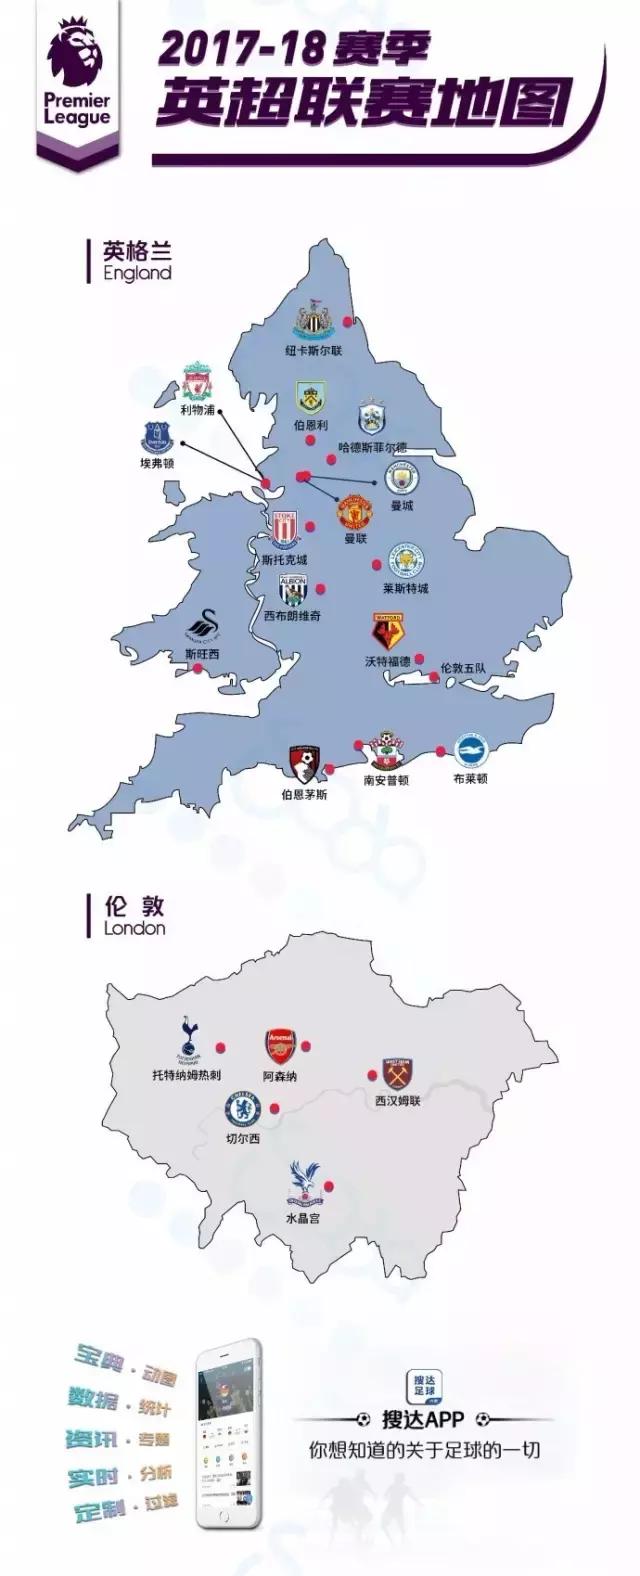 又到看足球学地理时间，欧洲五大联赛球队分布一目了然！